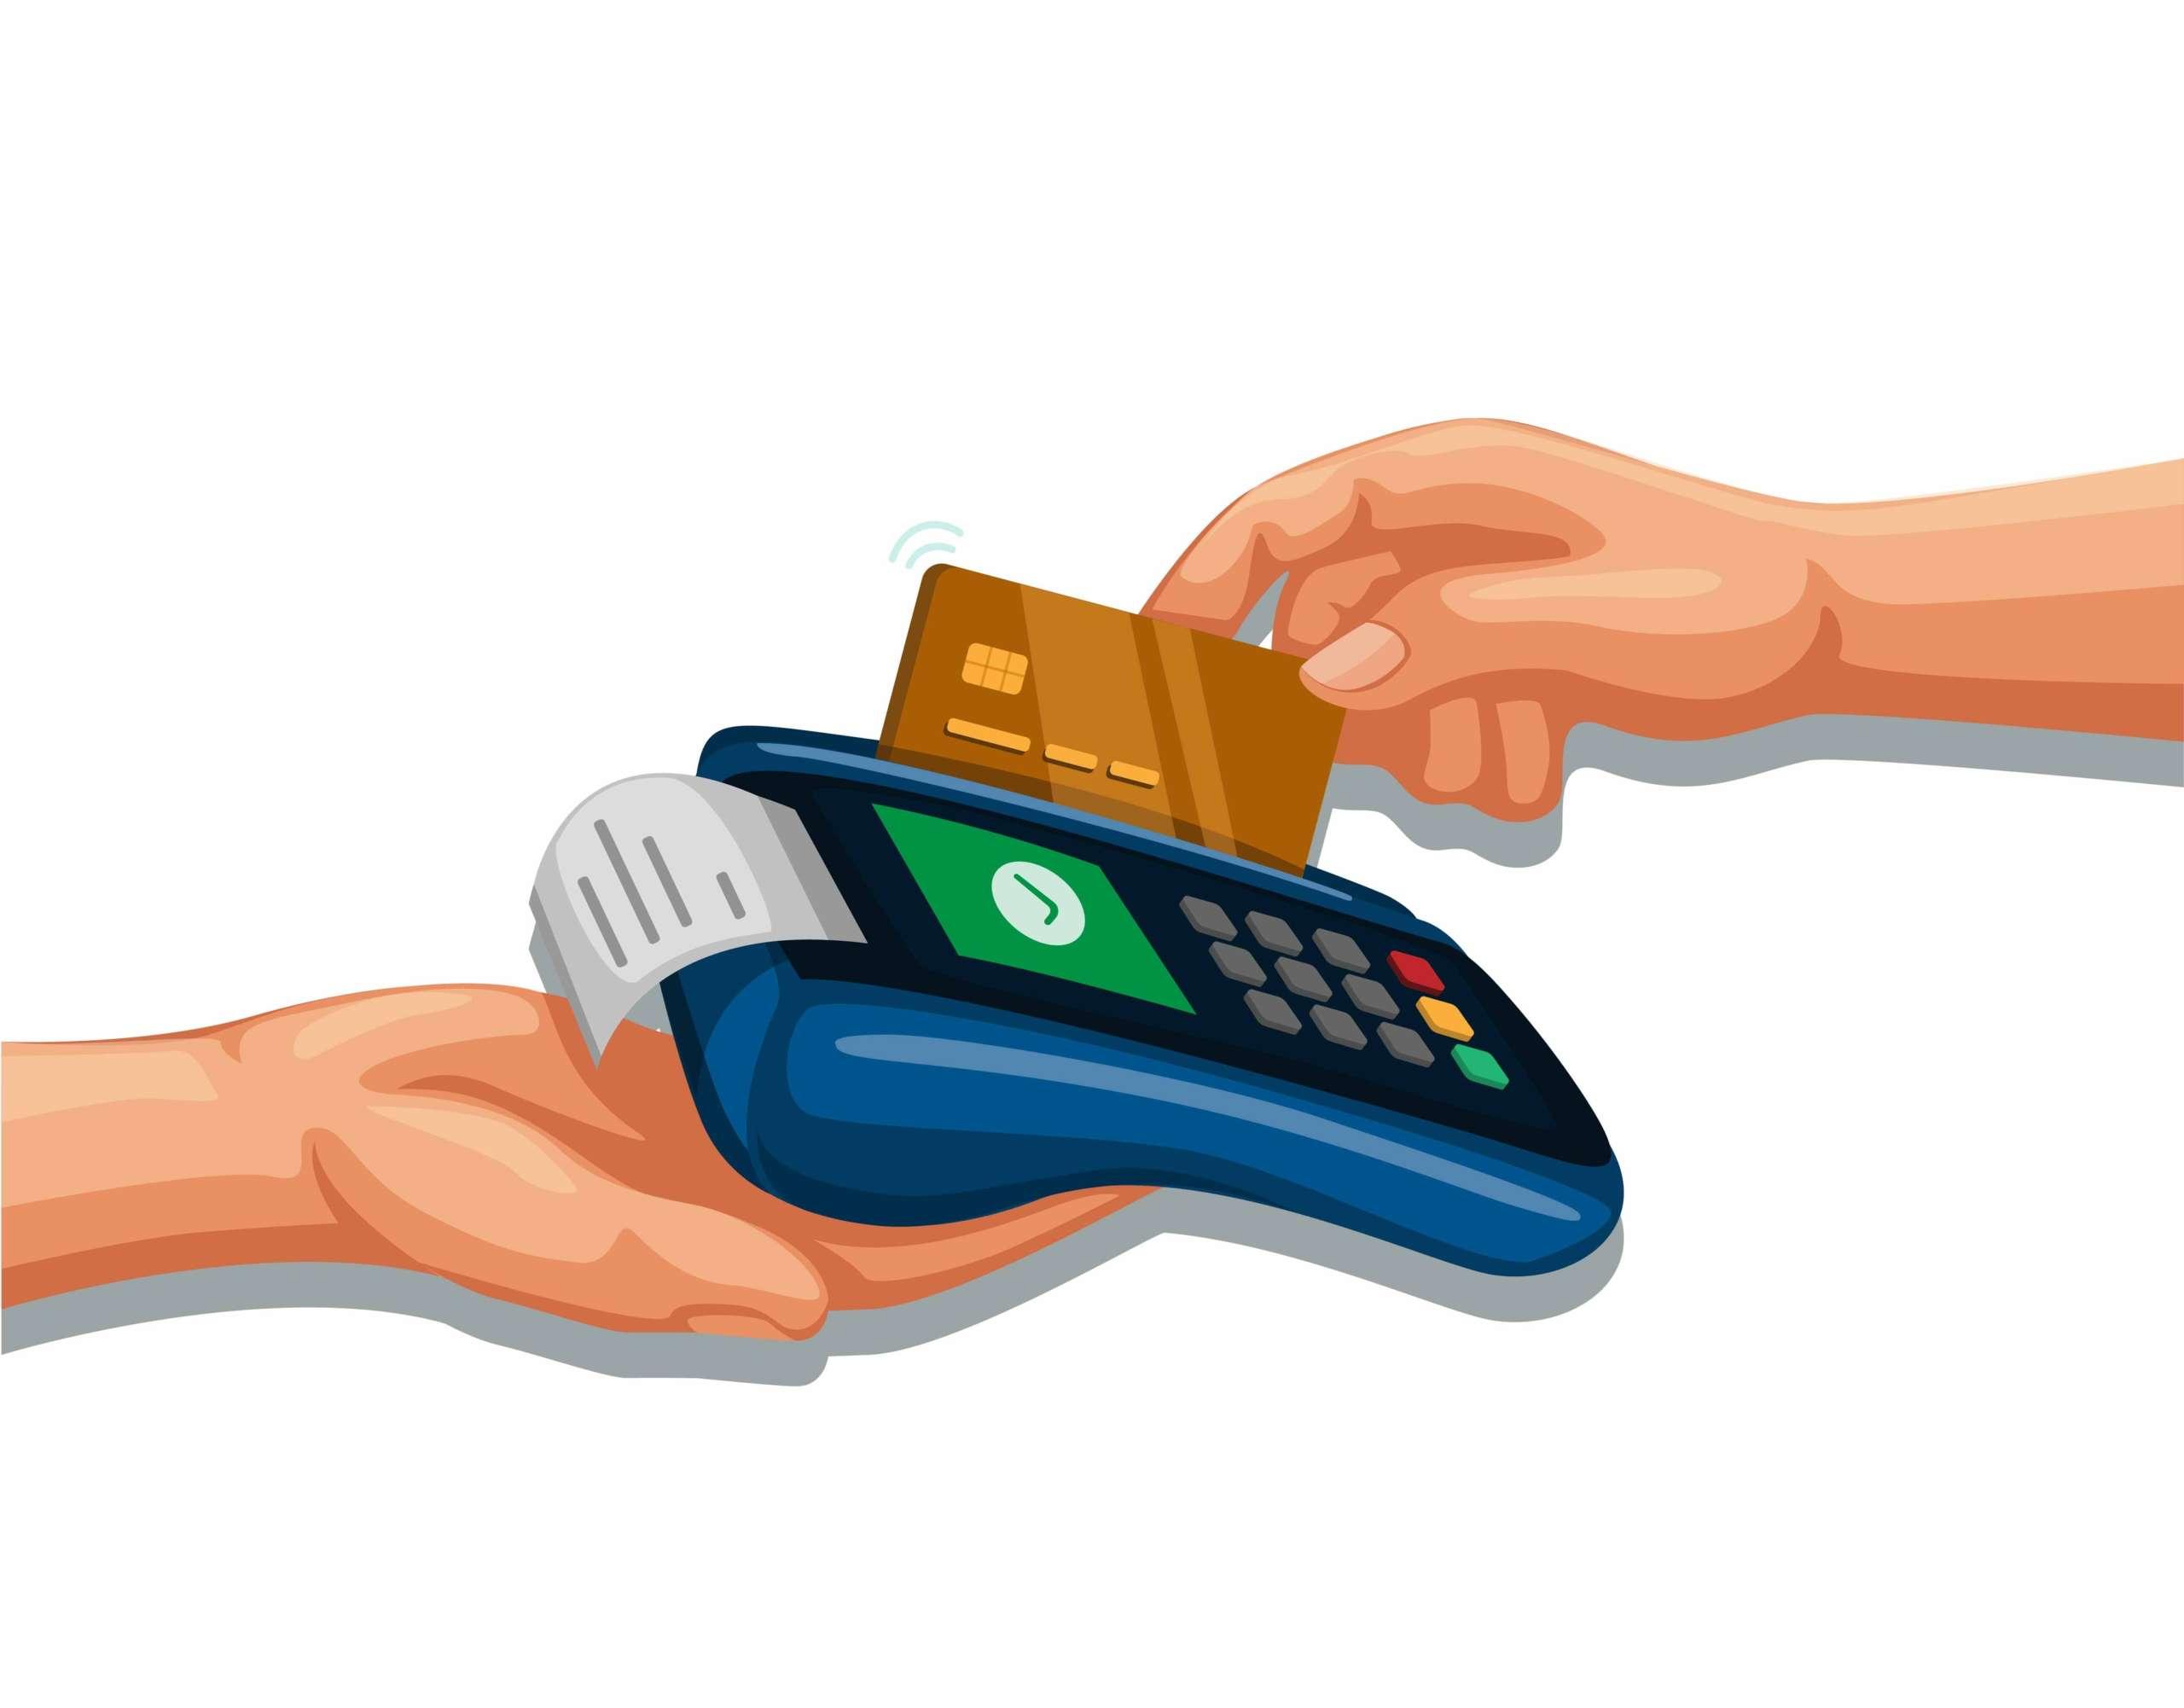 Kreditkarte mit Handdurchzug auf Zahlungsgerät, mobiles Banking und Einkaufssymbolkonzept Cartoon-Illustrationsvektor